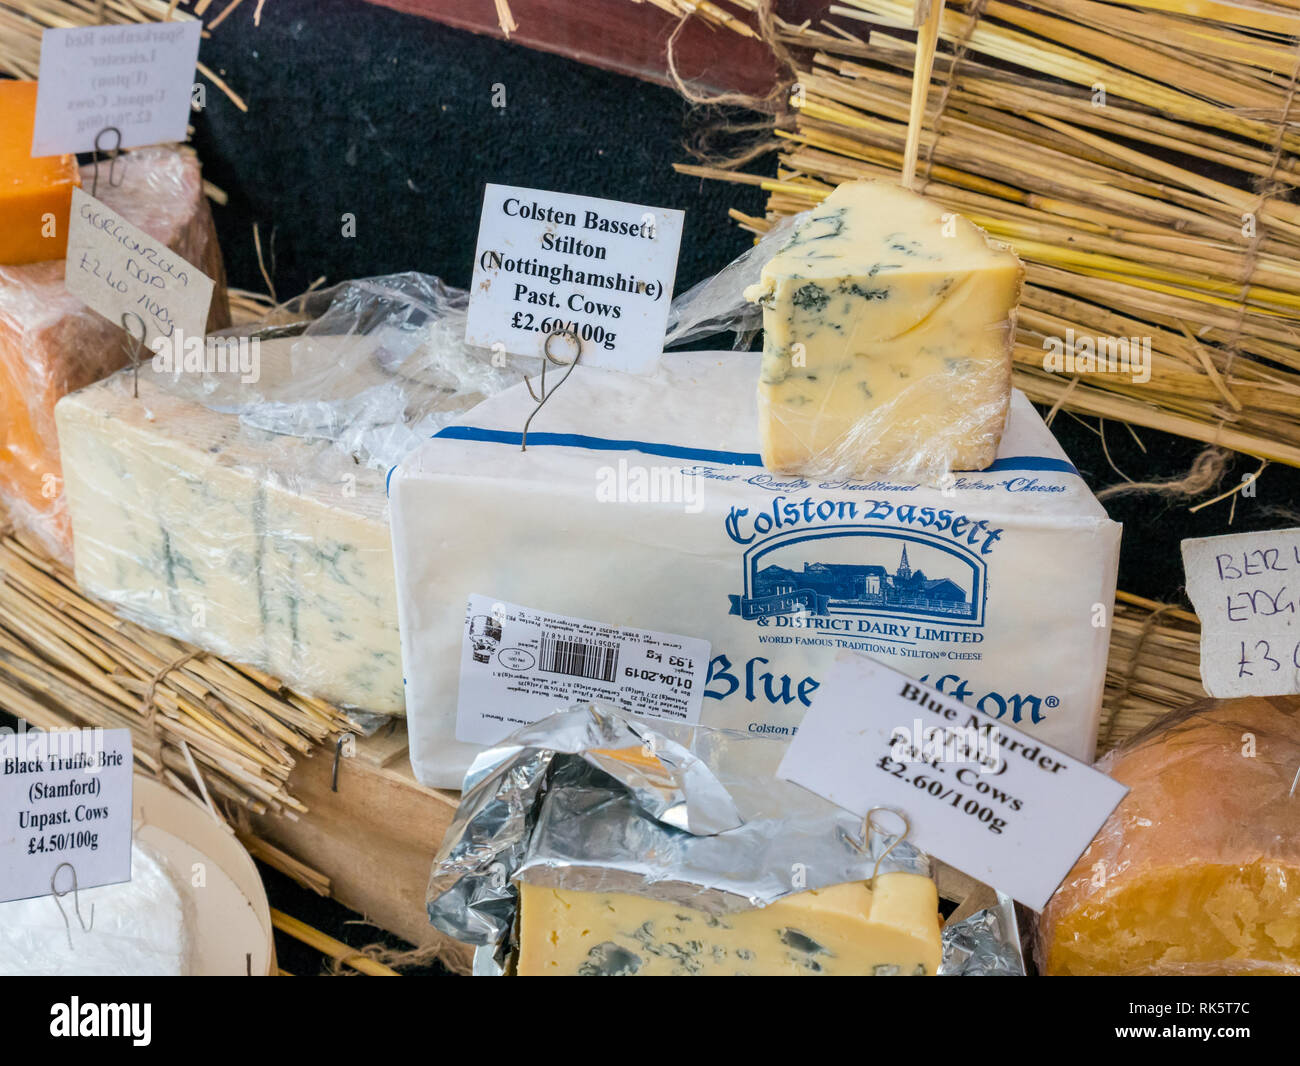 Fromages fromages artisanaux, de décrochage sur l'affichage, Leith, Dock du marché du samedi Place, Édimbourg, Écosse, Royaume-Uni Banque D'Images